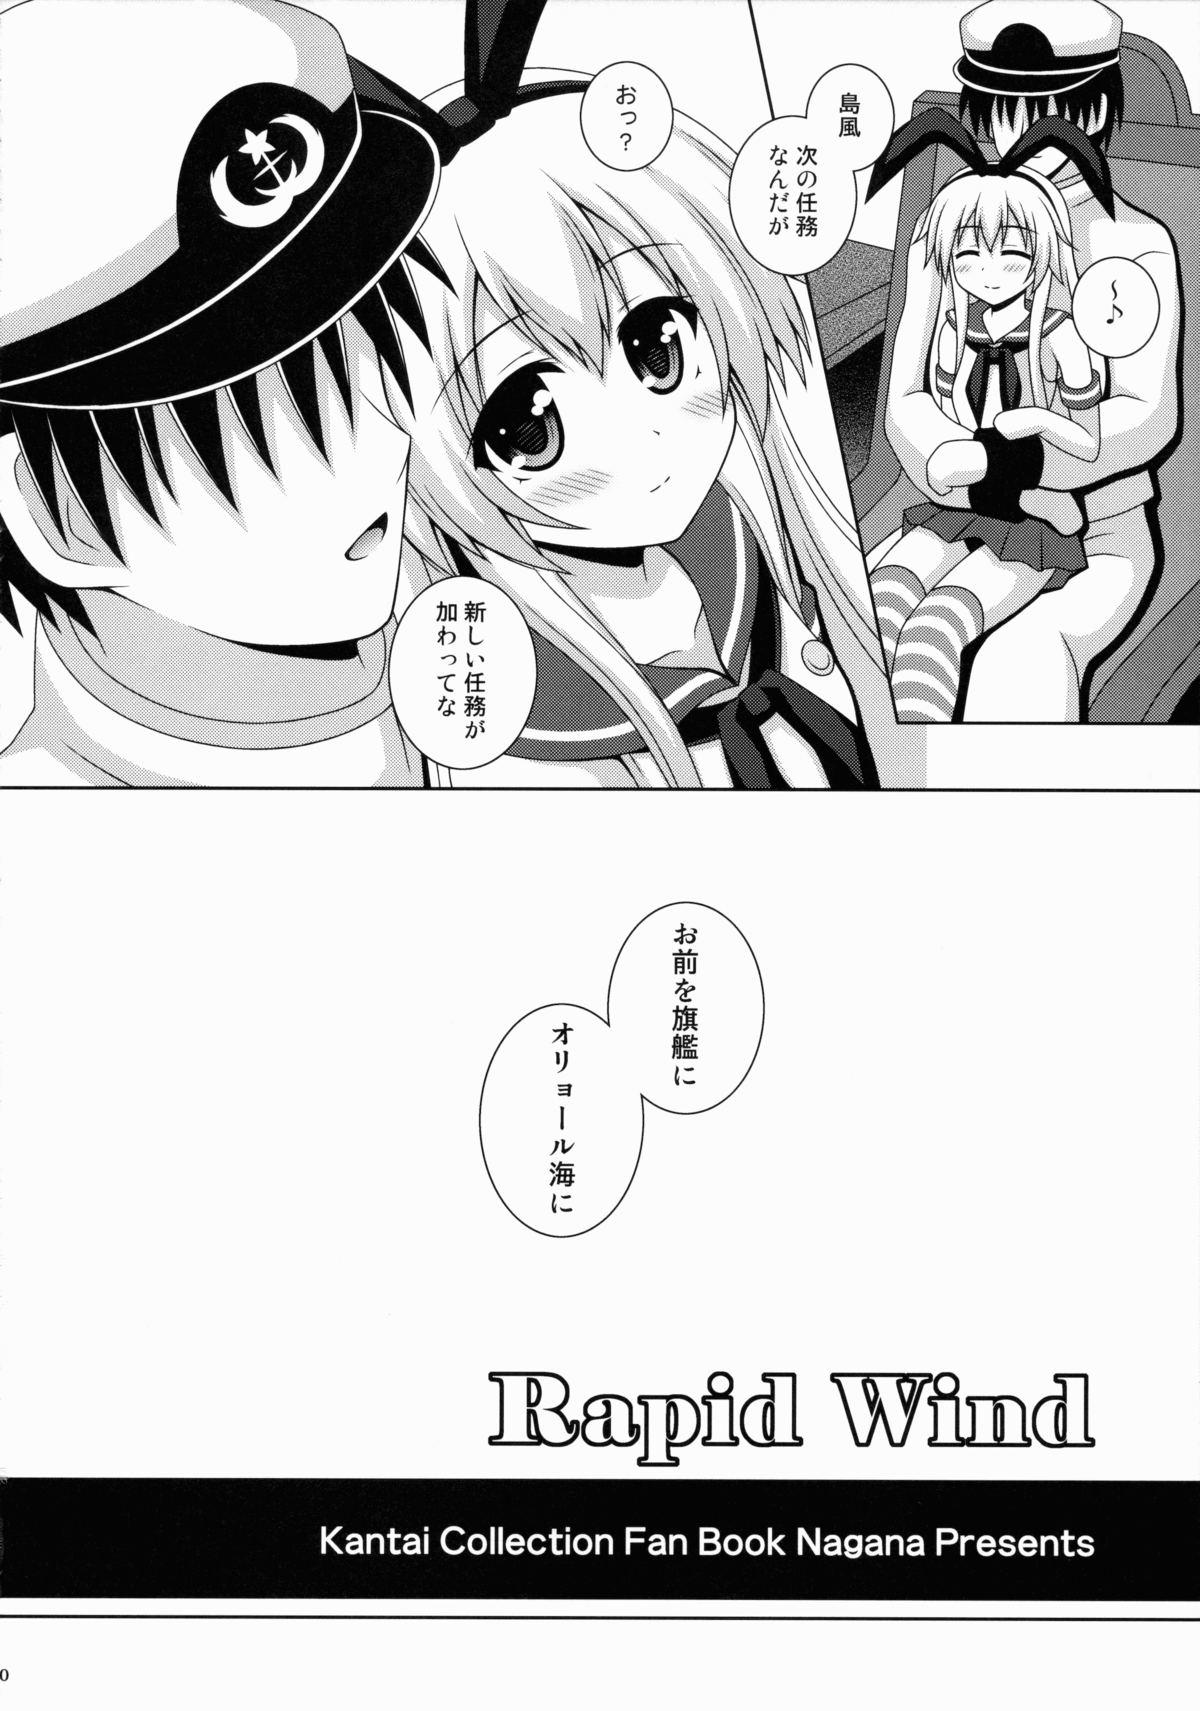 Rapid Wind 18